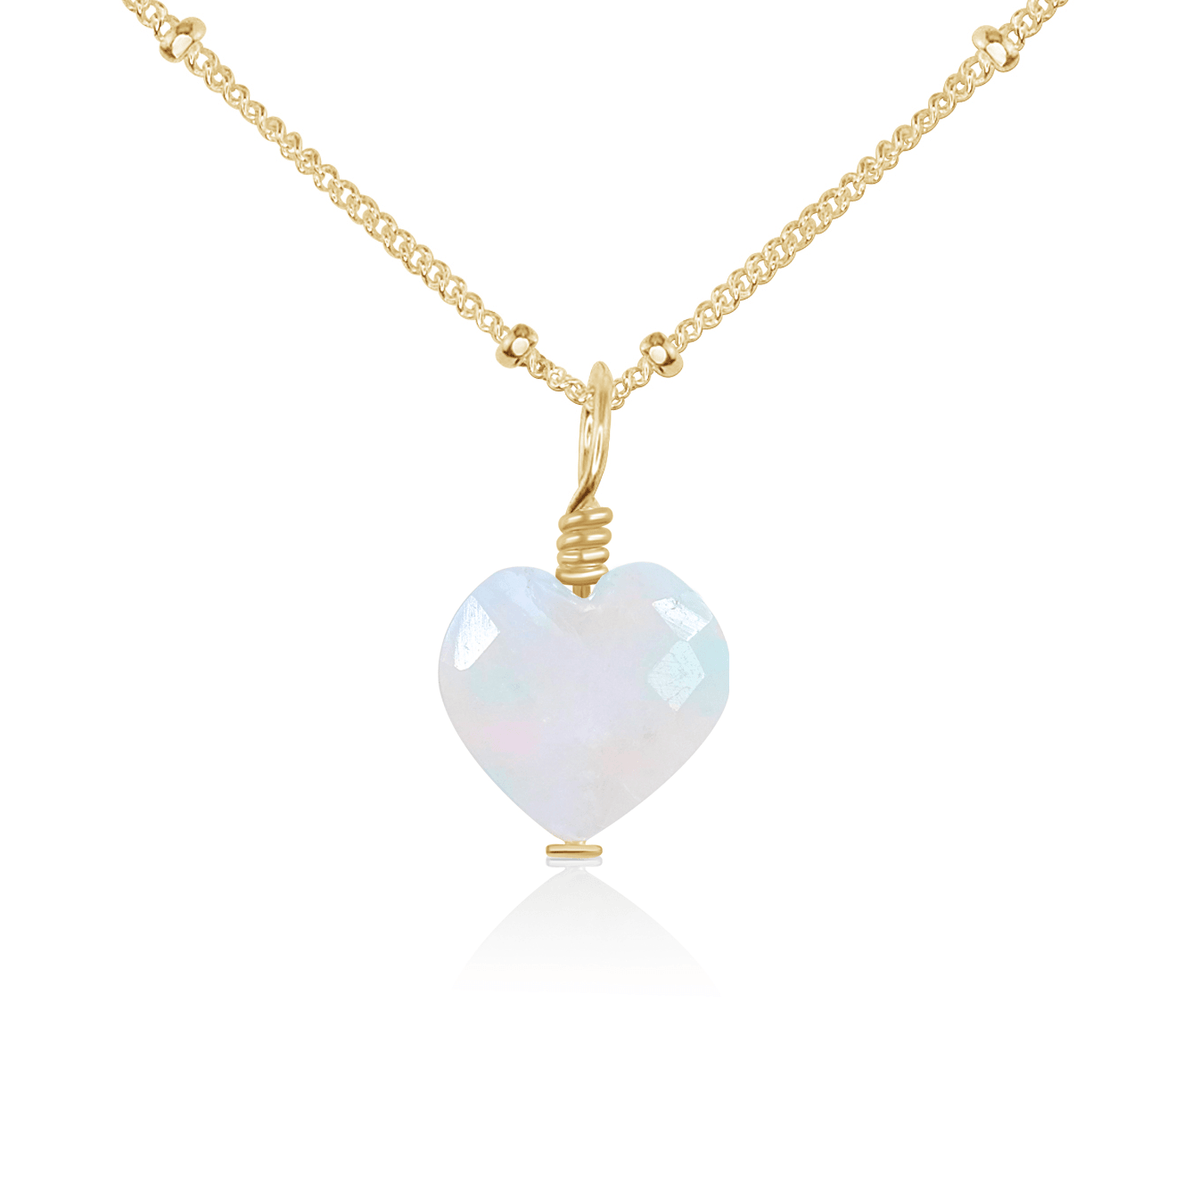 Rainbow Moonstone Crystal Heart Pendant Necklace - Rainbow Moonstone Crystal Heart Pendant Necklace - 14k Gold Fill / Satellite - Luna Tide Handmade Crystal Jewellery